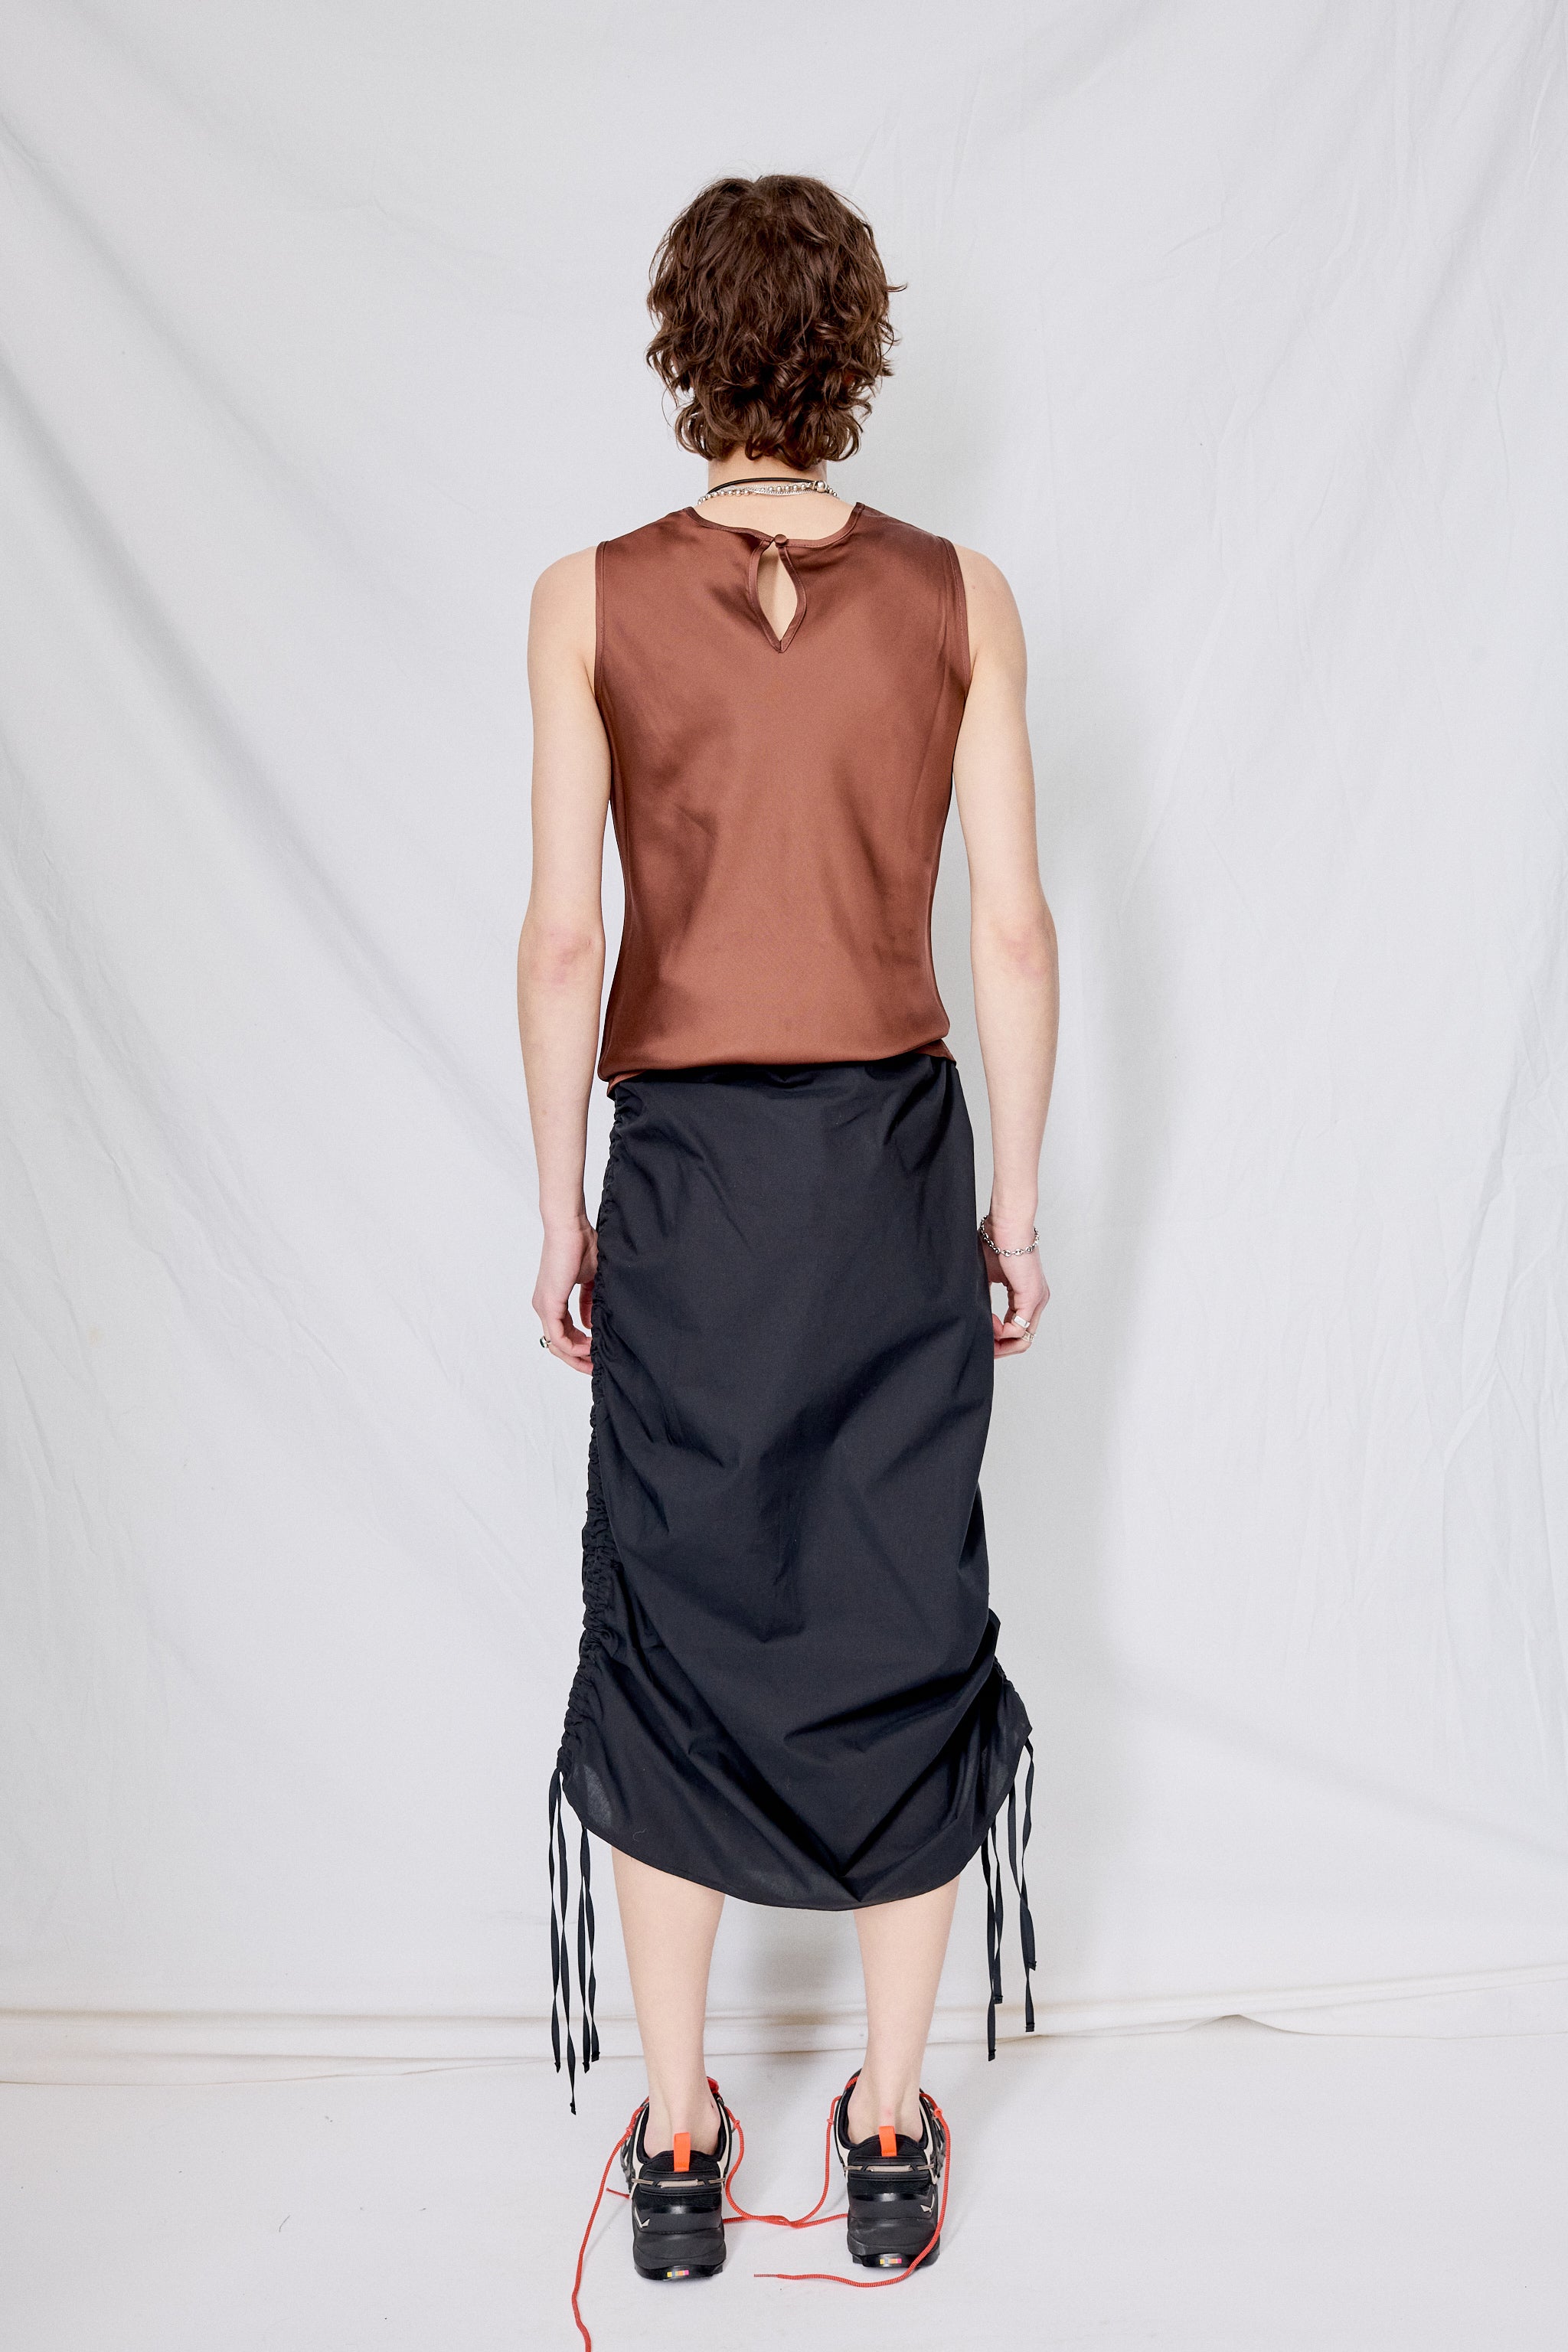 Black Pictorial Strap Skirt